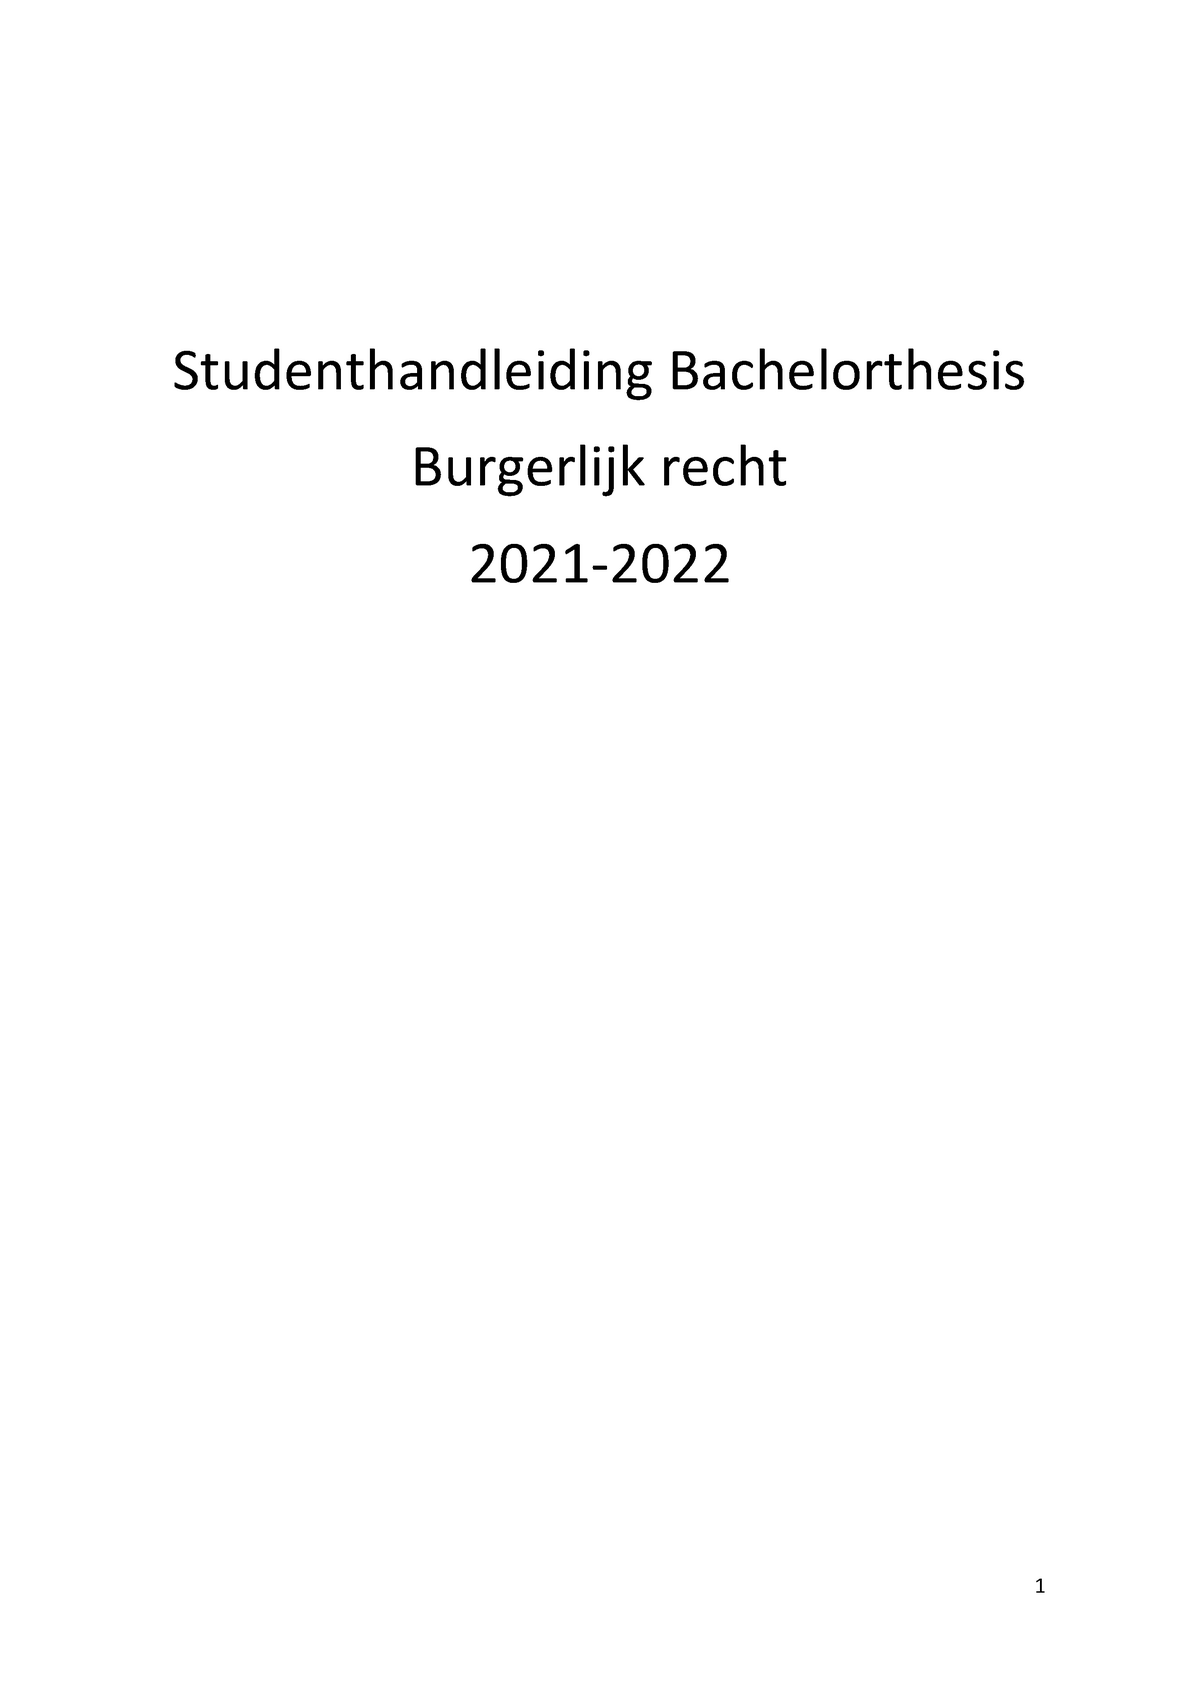 bachelor thesis oder bachelorthesis